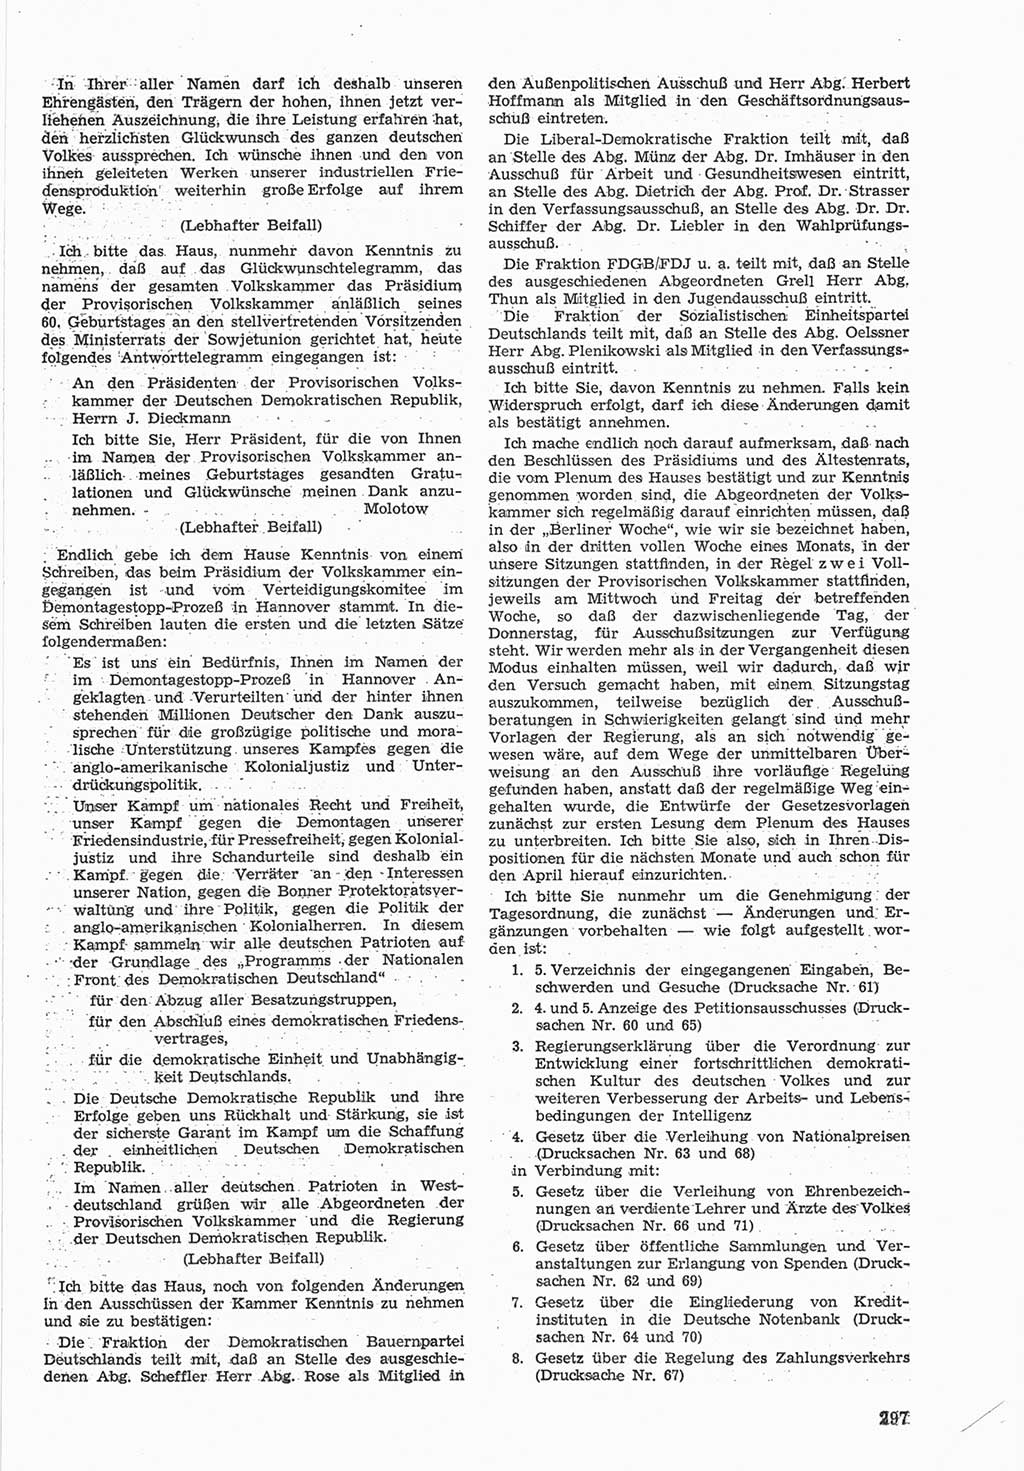 Provisorische Volkskammer (VK) der Deutschen Demokratischen Republik (DDR) 1949-1950, Dokument 311 (Prov. VK DDR 1949-1950, Dok. 311)